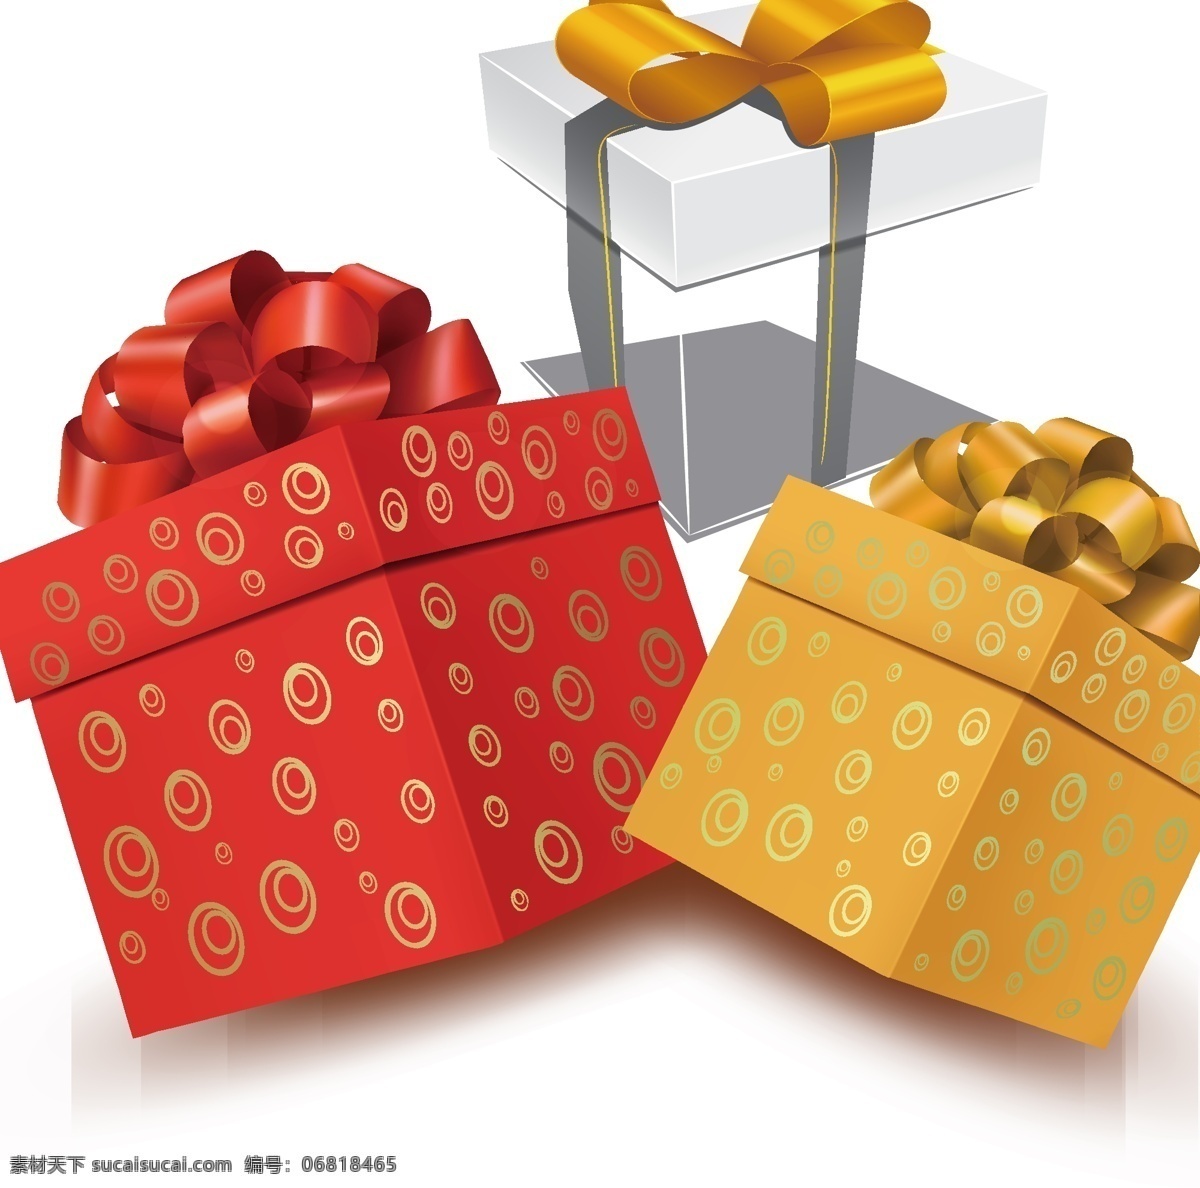 礼盒 礼物 矢量 礼盒礼物 矢量素材 礼物素材 礼盒矢量